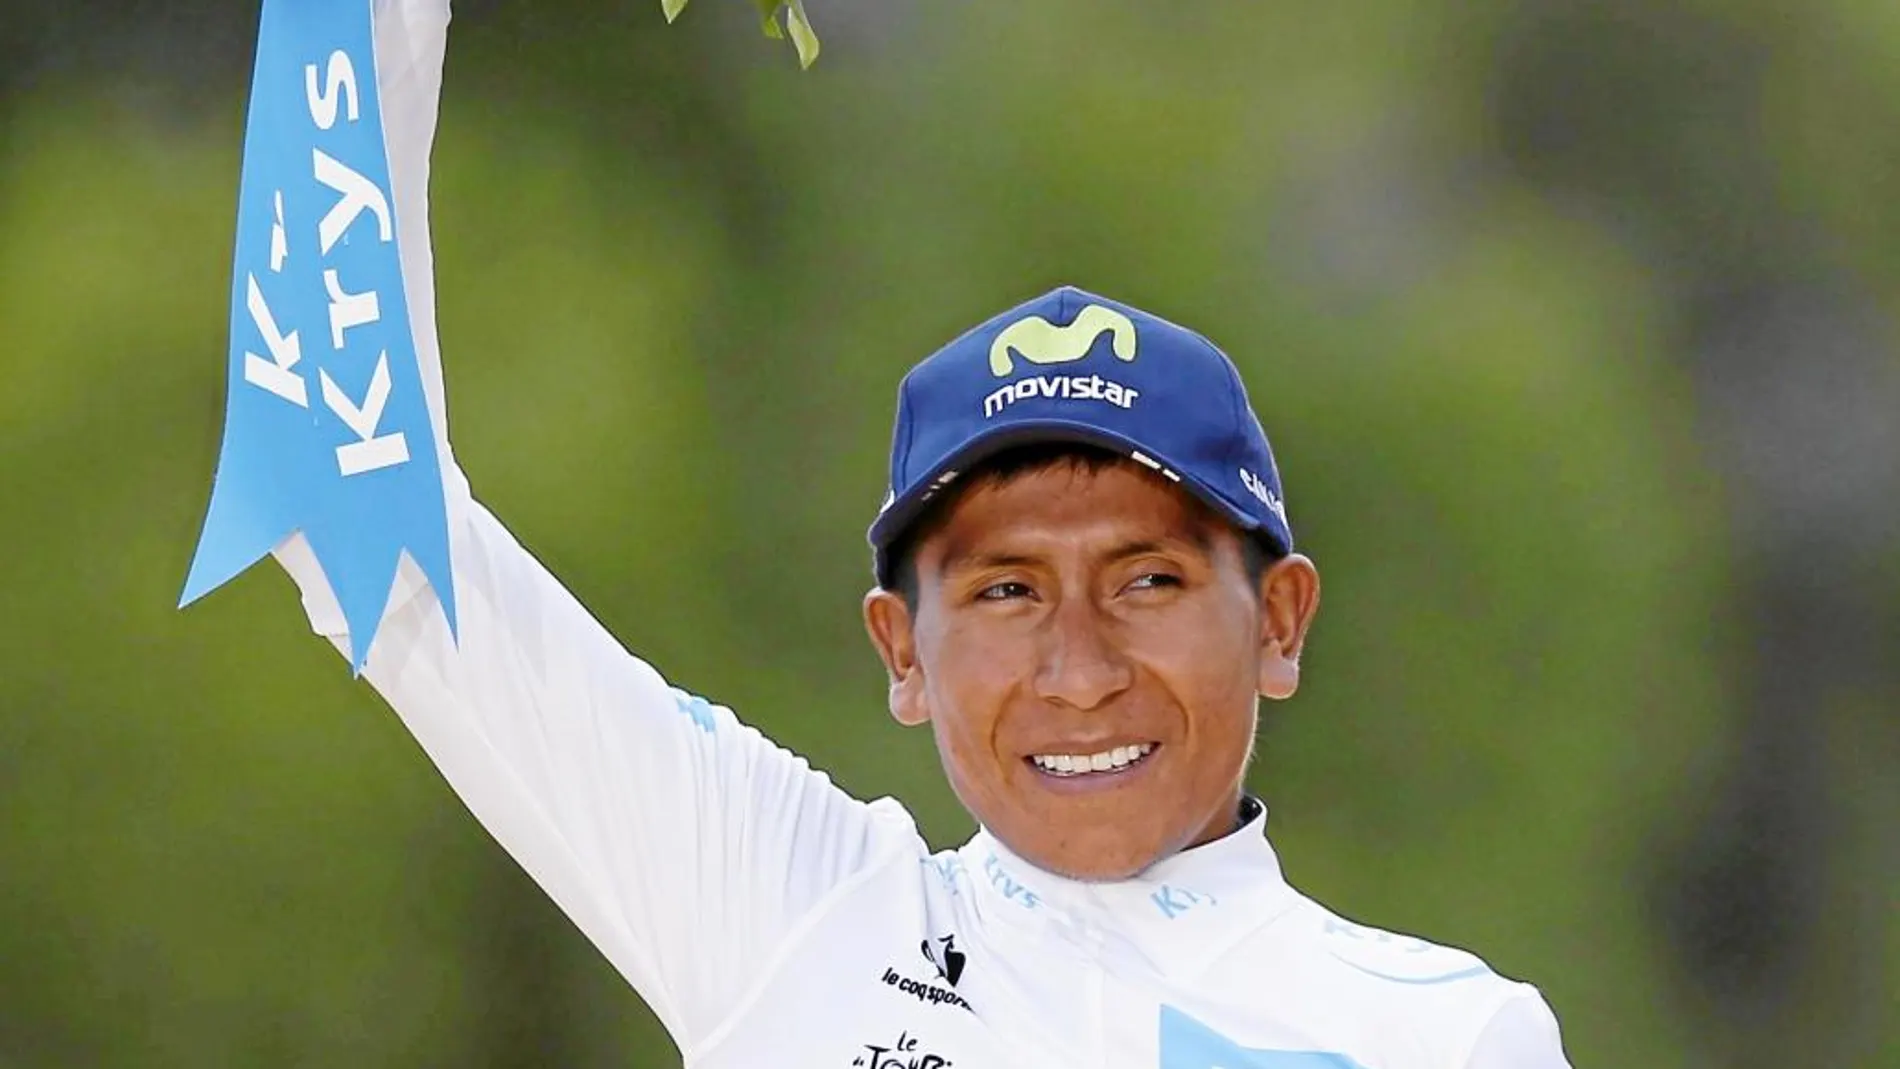 Nairo sonreía en el segundo cajón del podio, con un ramo de flores en la mano, pero reconoció estar algo triste porque su objetivo era ganar el Tour